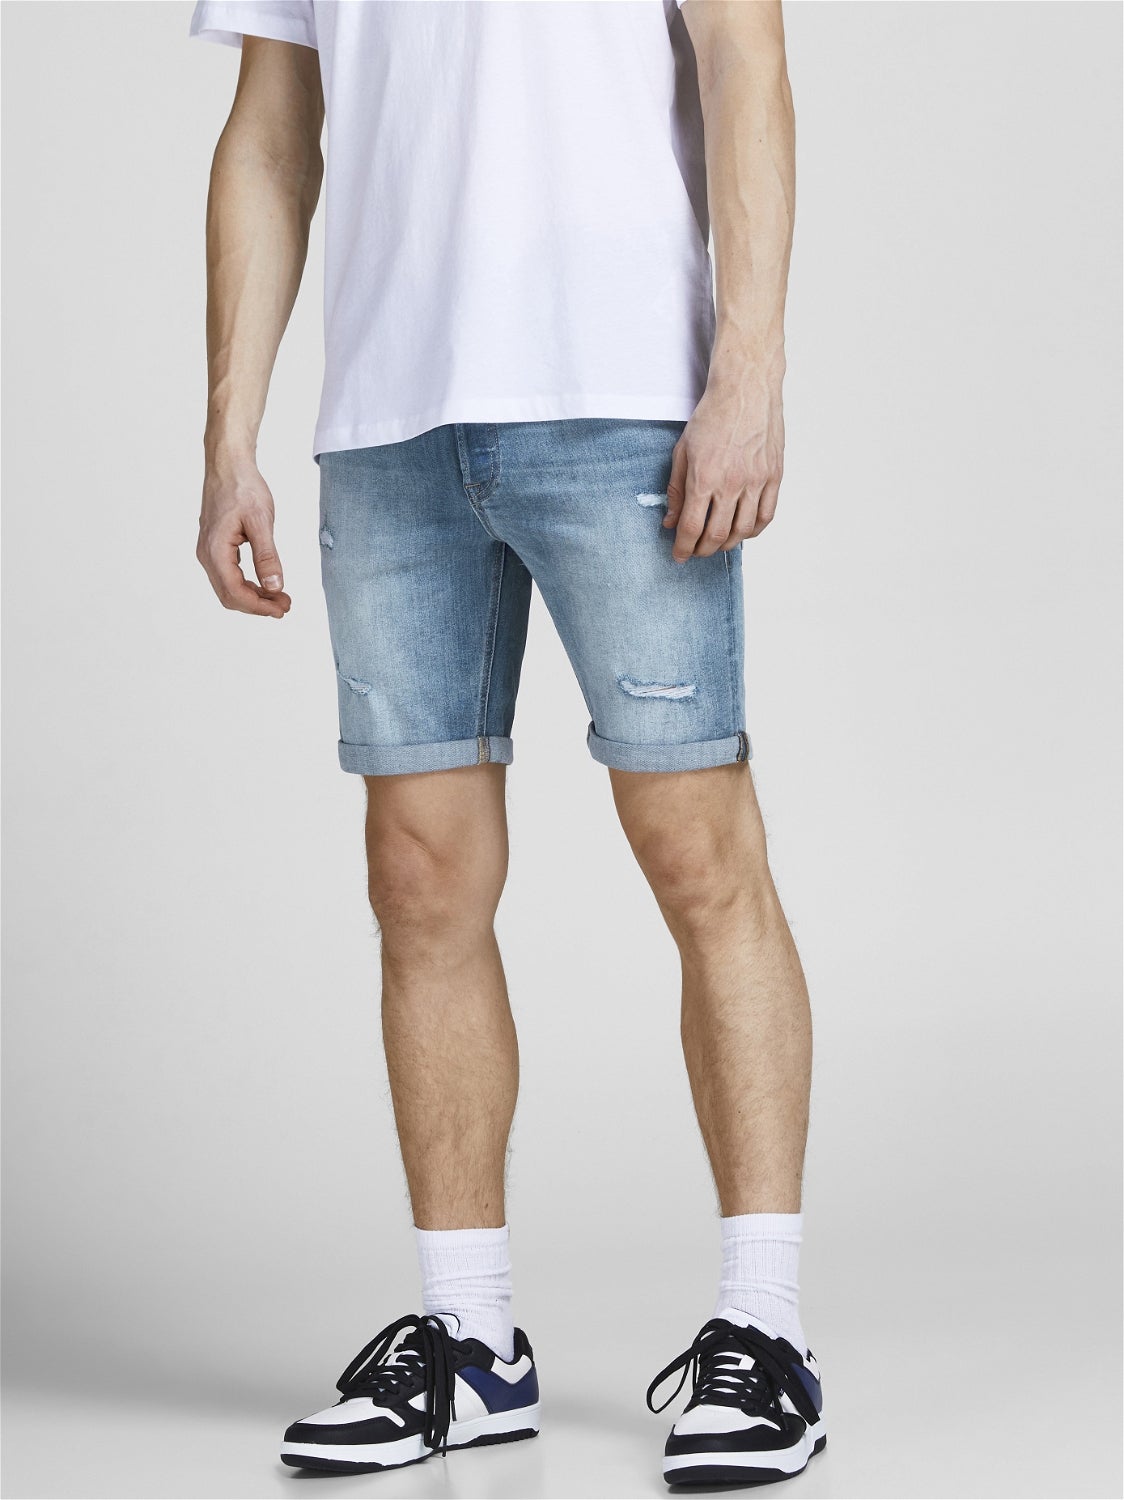 Blau M Jack & Jones Shorts jeans HERREN Jeans Basisch Rabatt 57 % 